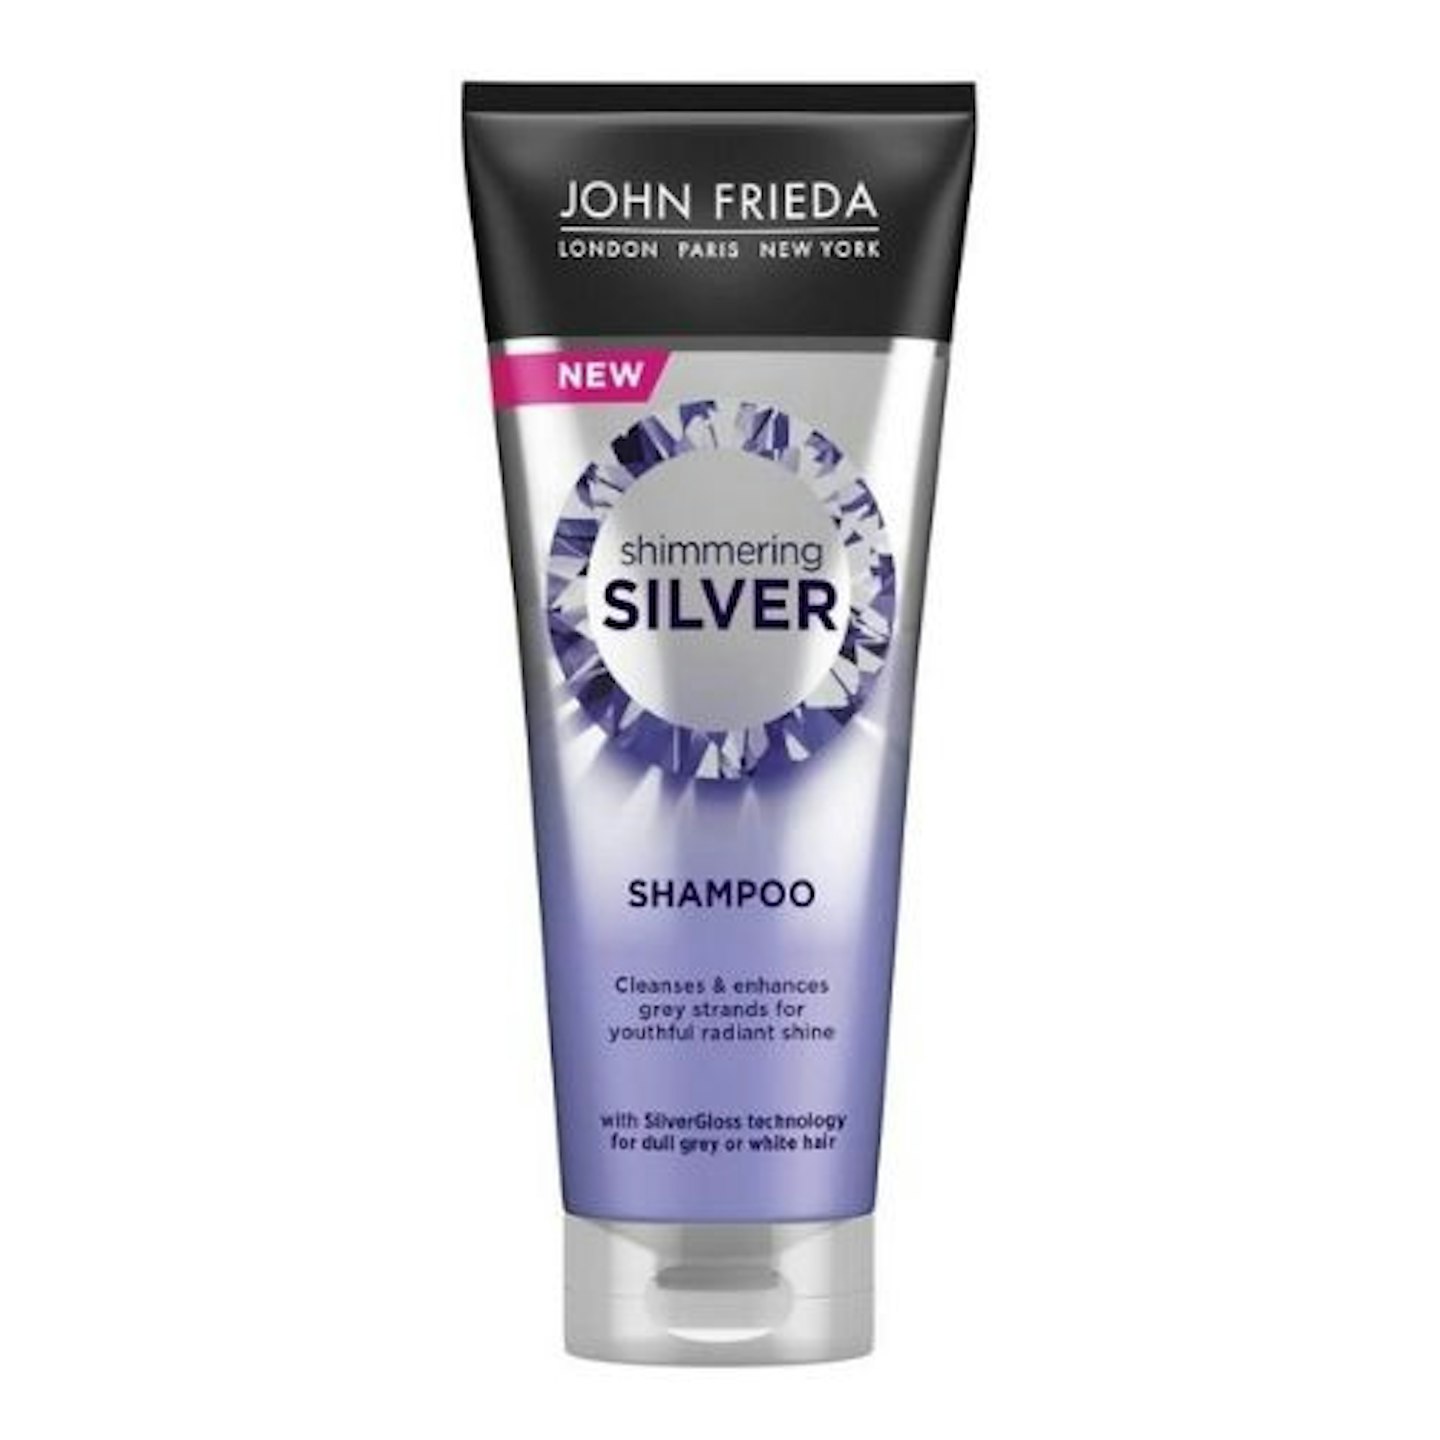 John Frieda Shimmering Silver Shampoo